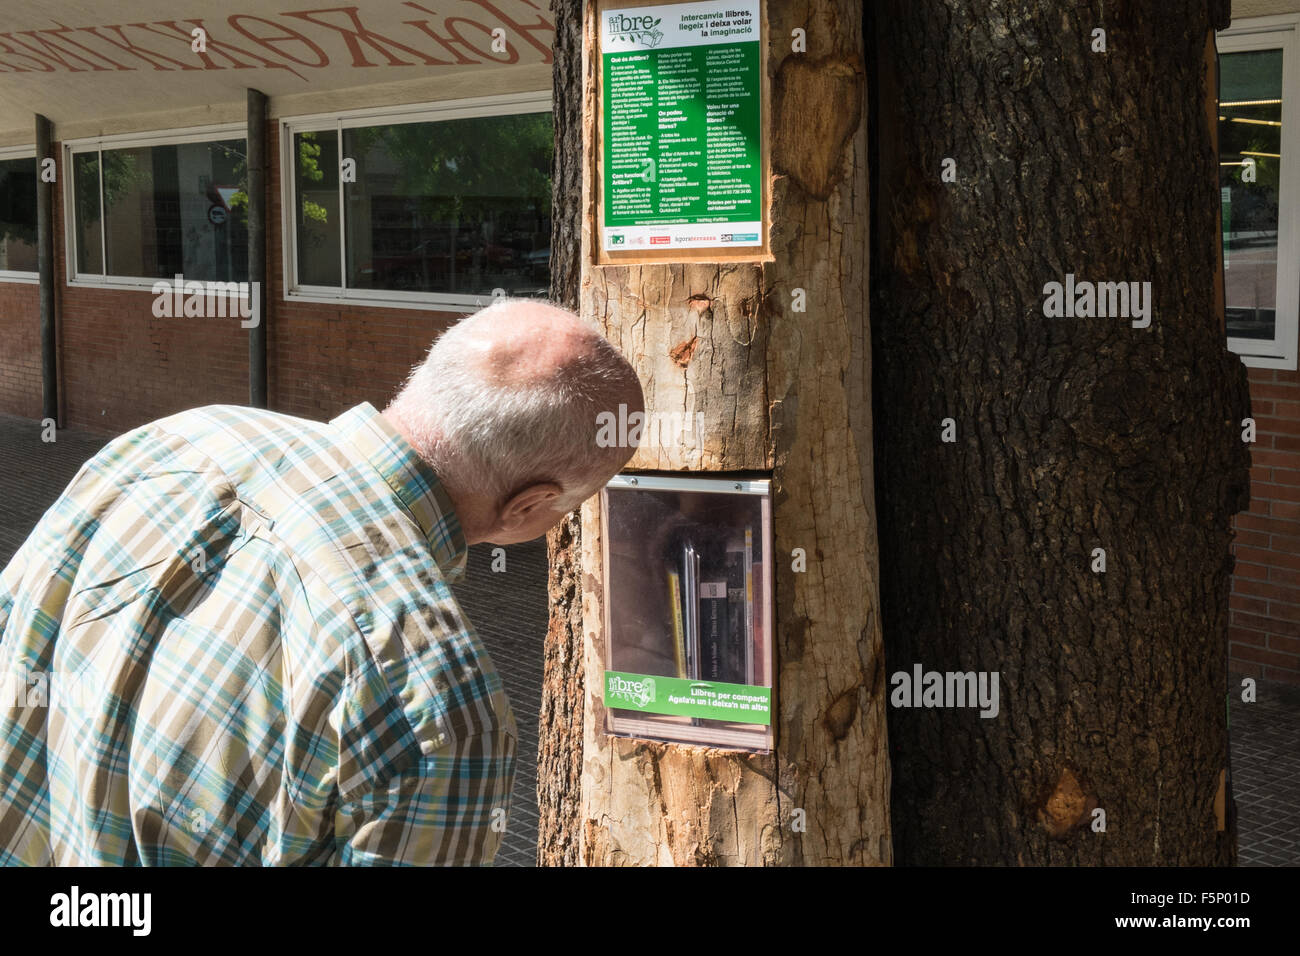 Innovative Idee, verwendet, recycelt, Bücher, die in einem zur Verfügung, Baum, Draußen, Öffentliche Bibliothek, Terrassa, einer Stadt in der Provinz Barcelona, Katalonien, Spanien. Stockfoto